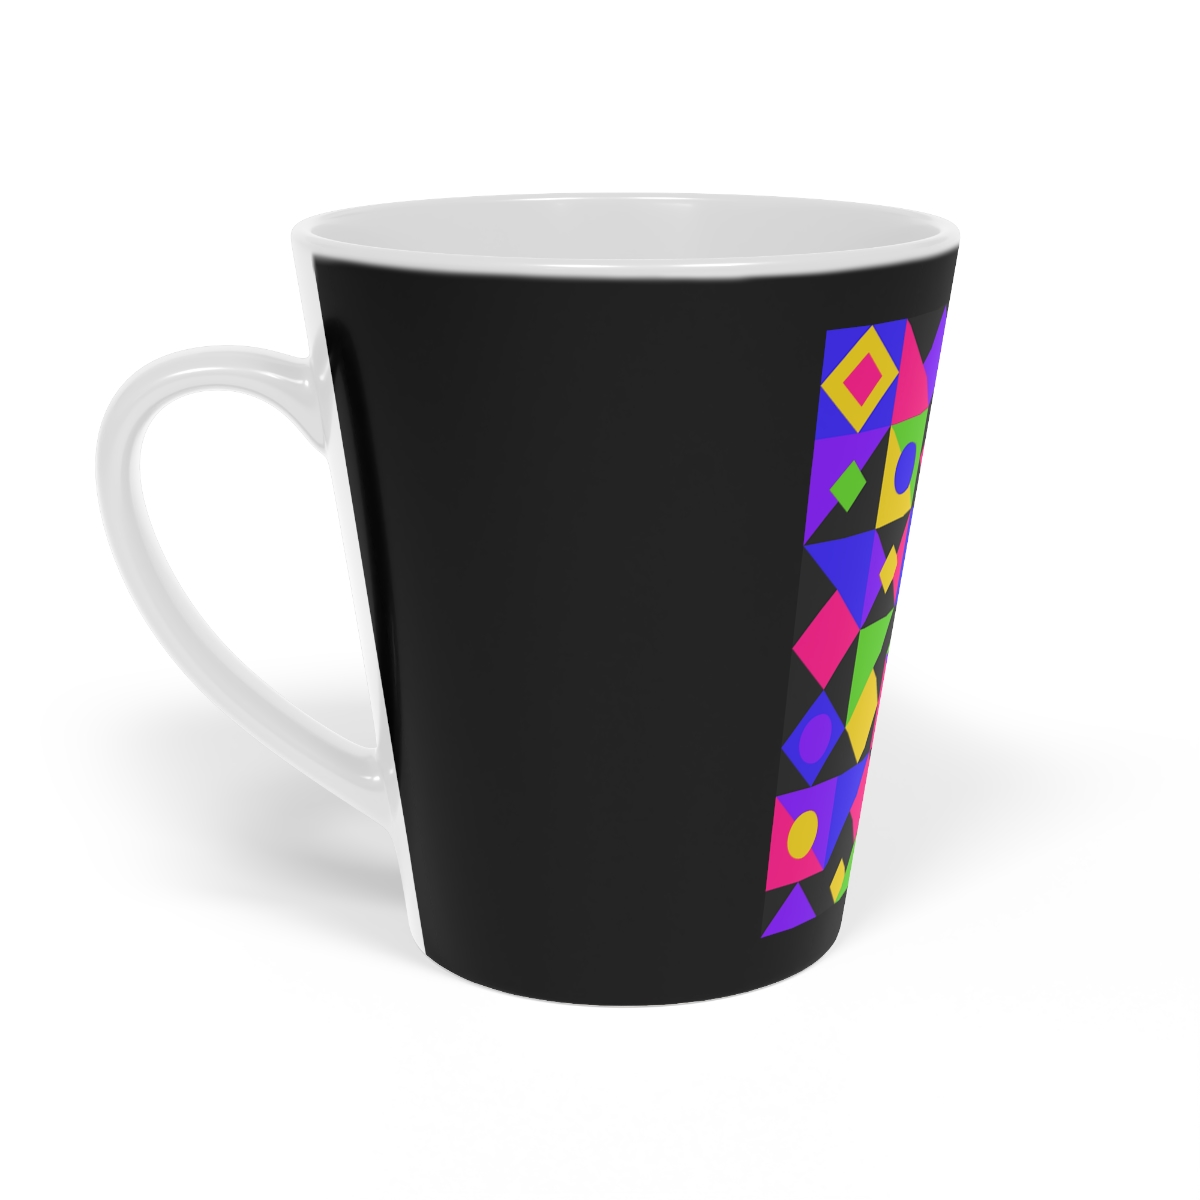 Elegant and Durable Ceramic Mug for Everyday Use - Latte Mug, 12oz product thumbnail image